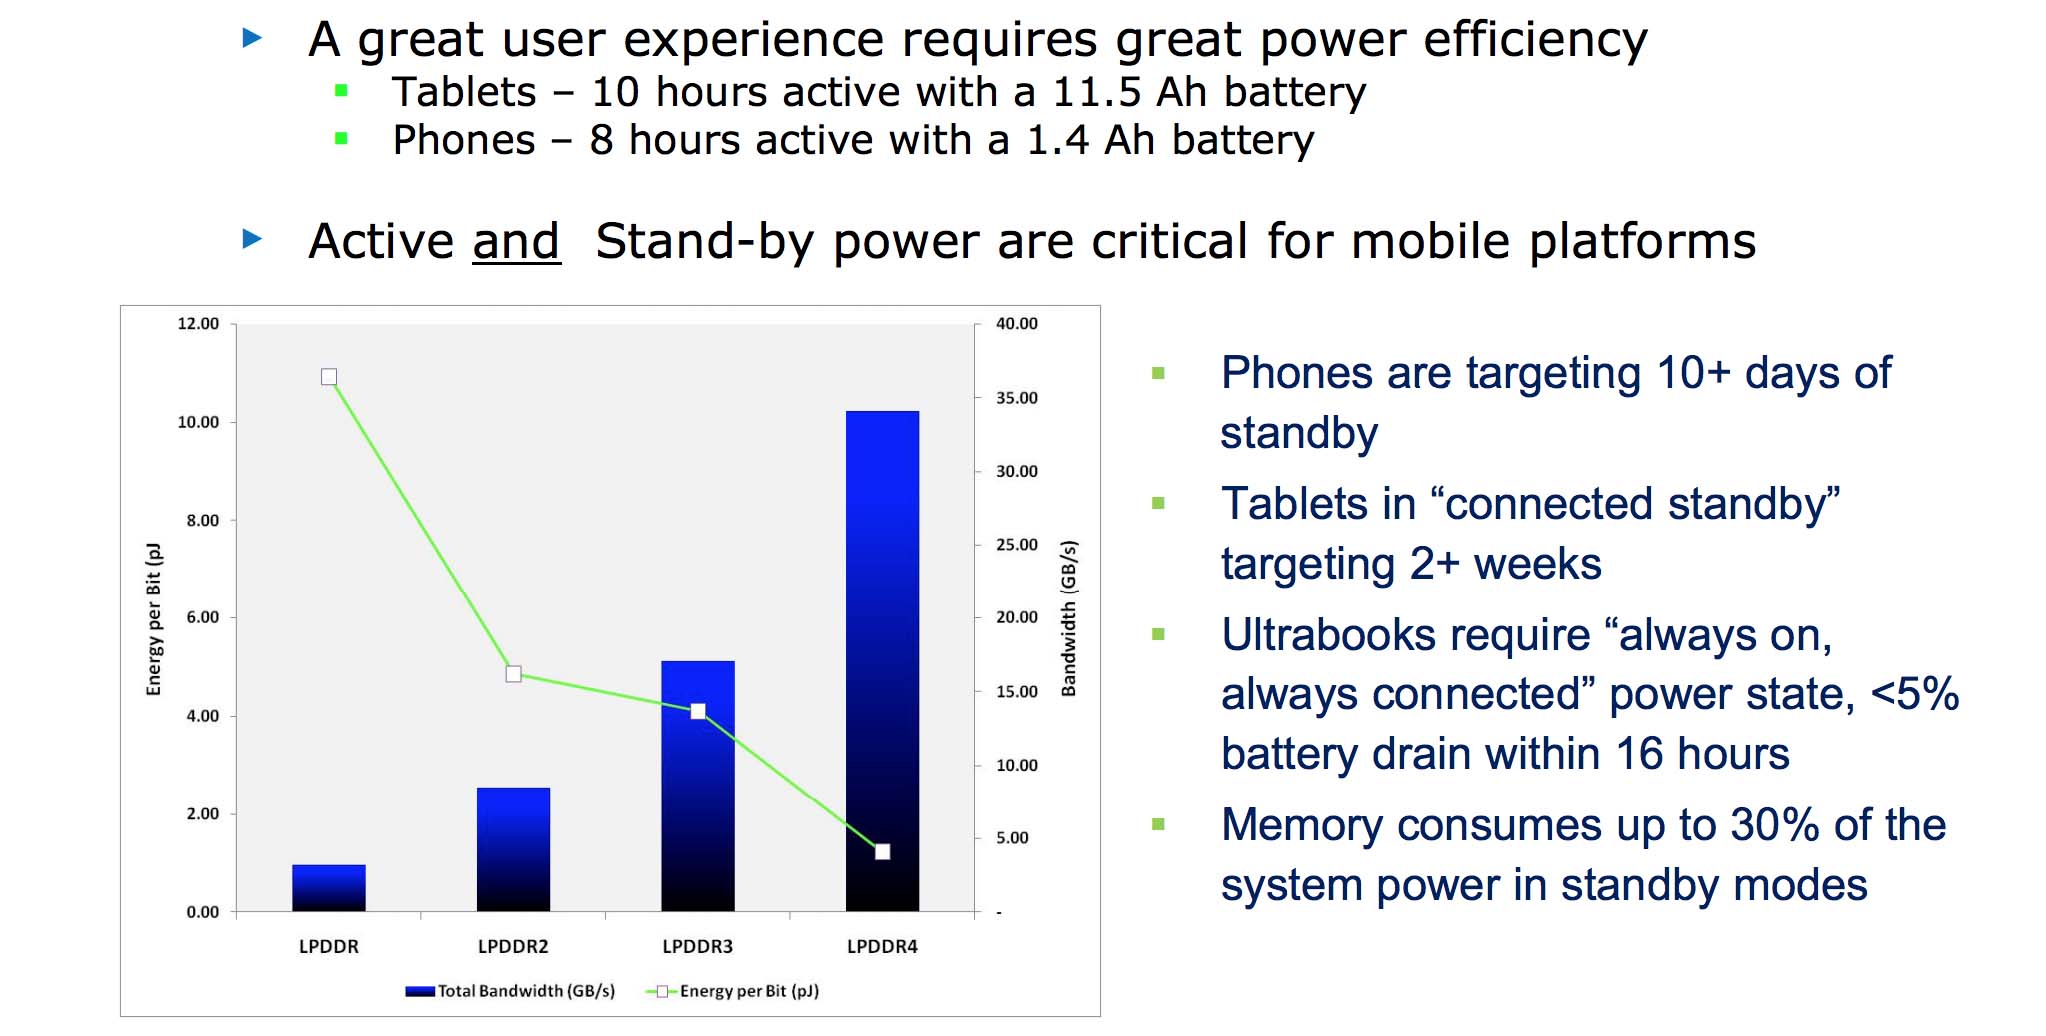 Låga strömkrav är avgörande för mobiler och LPDDR4 är det mest energieffektiva minnet hittills.